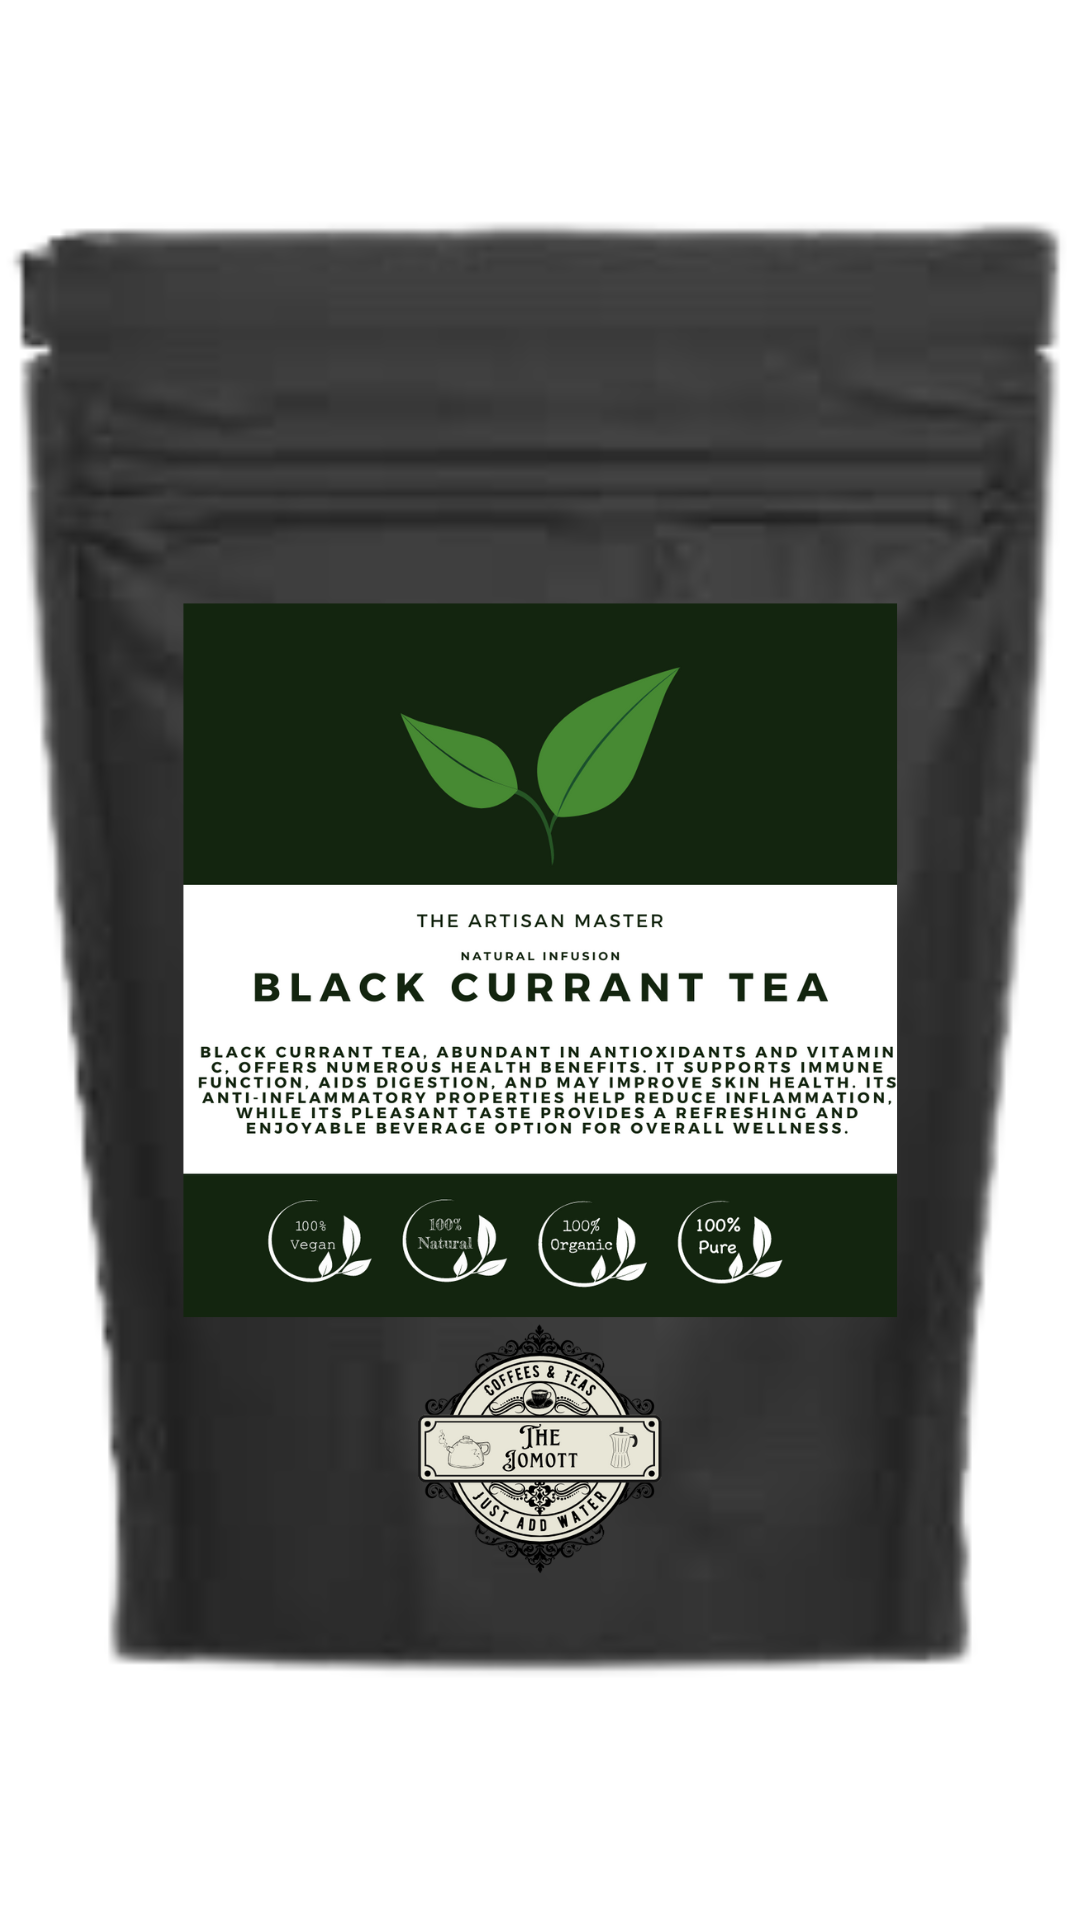 BLACK CURRANT TEA